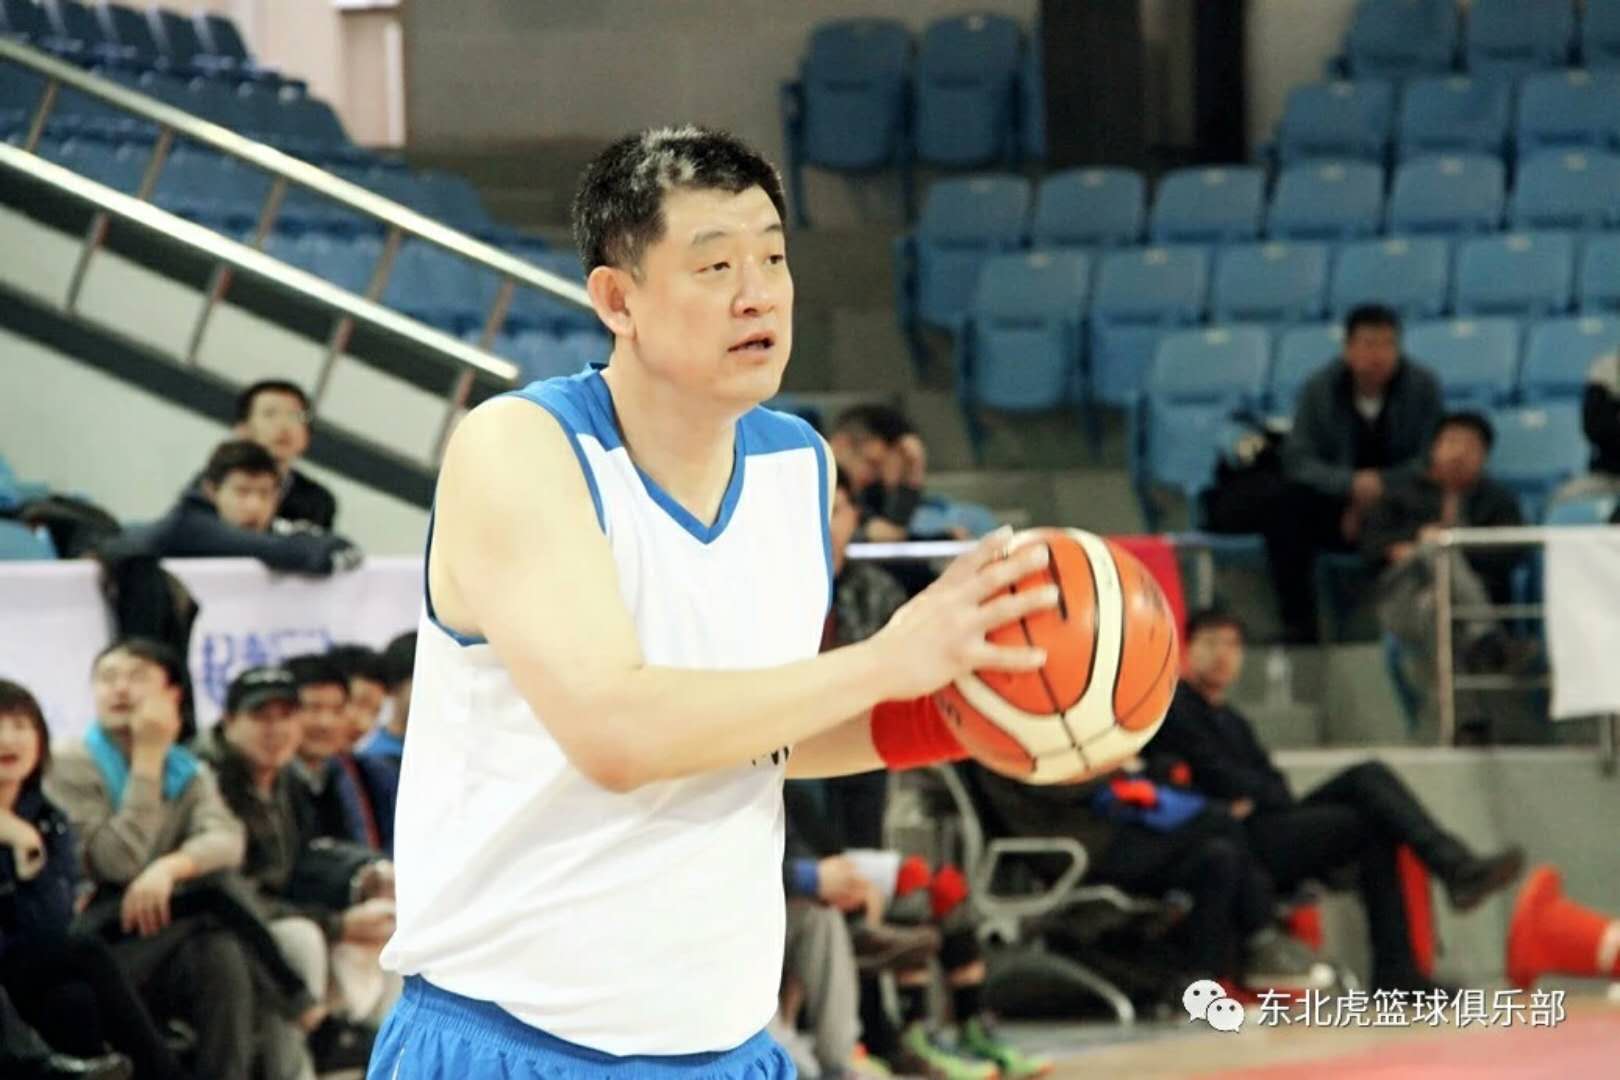 长春市篮球俱乐部邀请赛  “虎王”孙军现身赛场引爆球迷